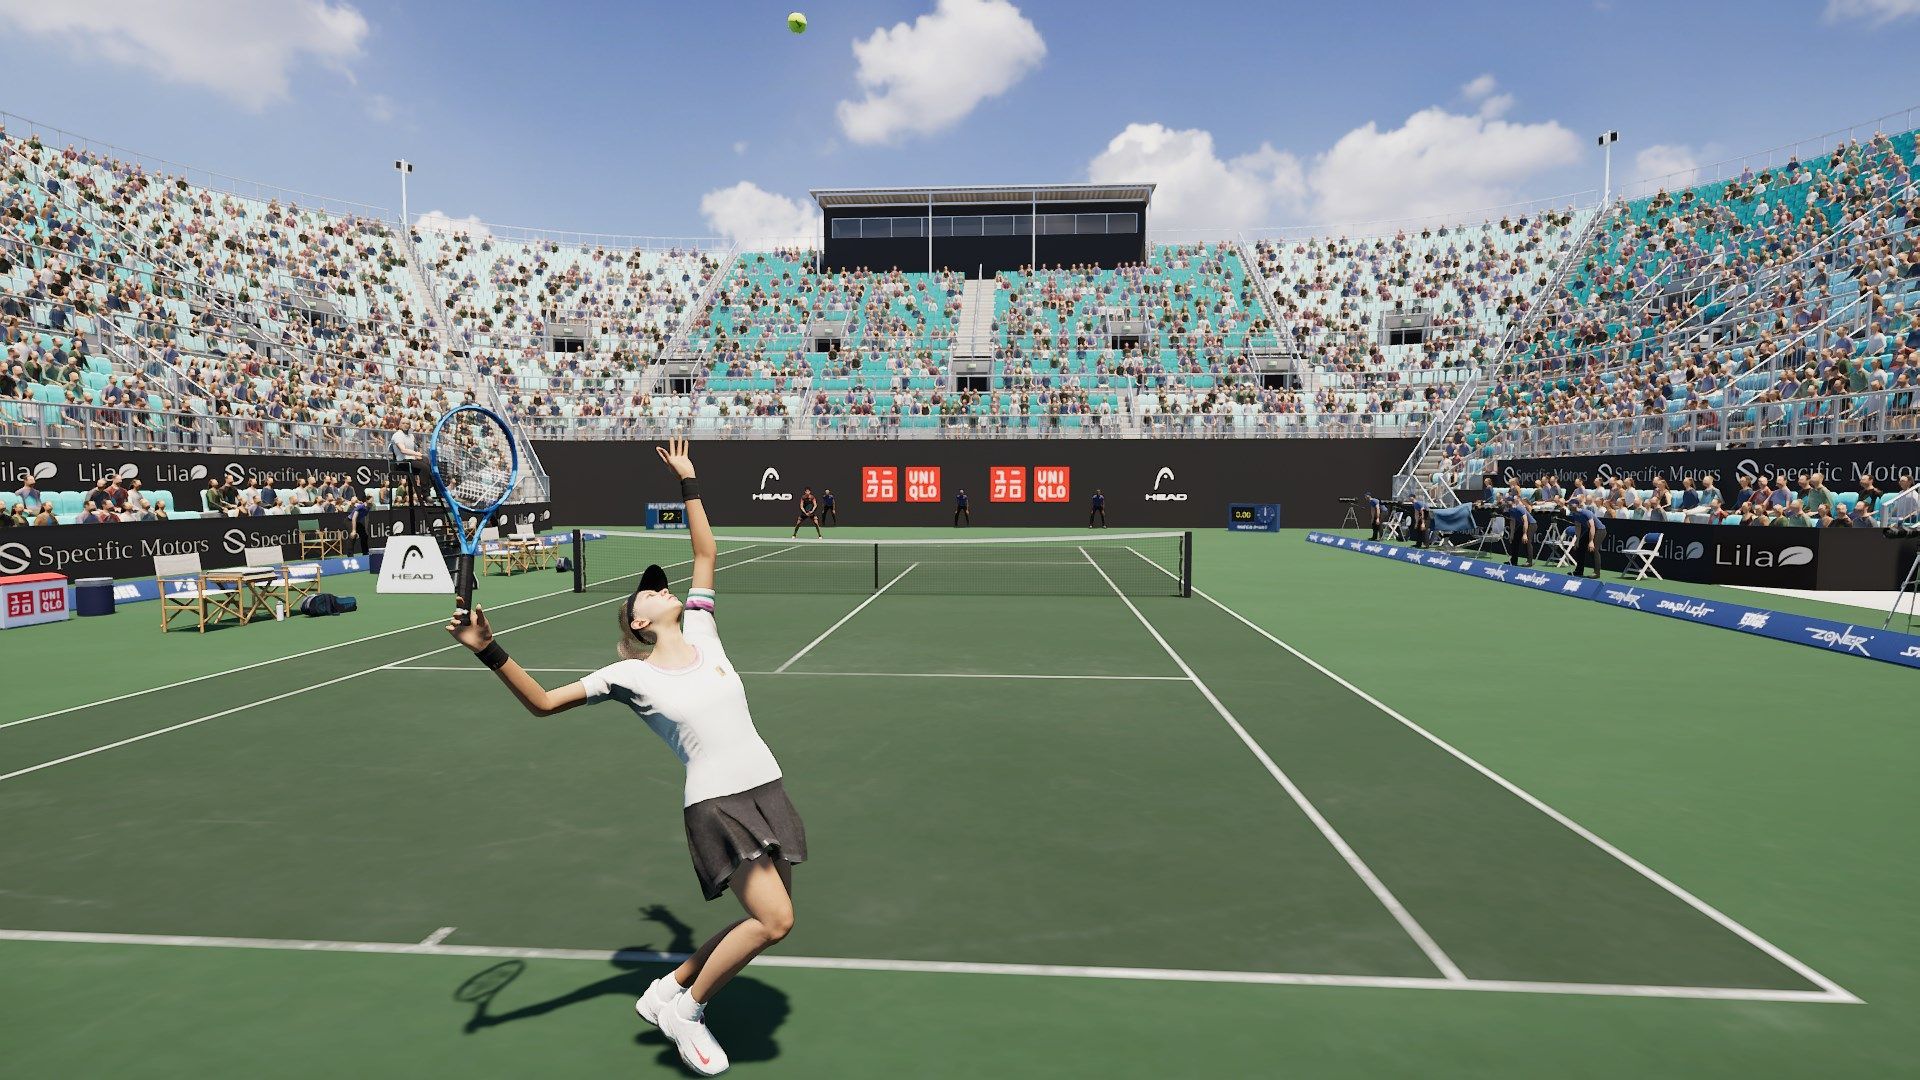 Next Weeks on Xbox: Neue Spiele vom 4. bis zum 8. Juli: Matchpoint: Tennis Championships